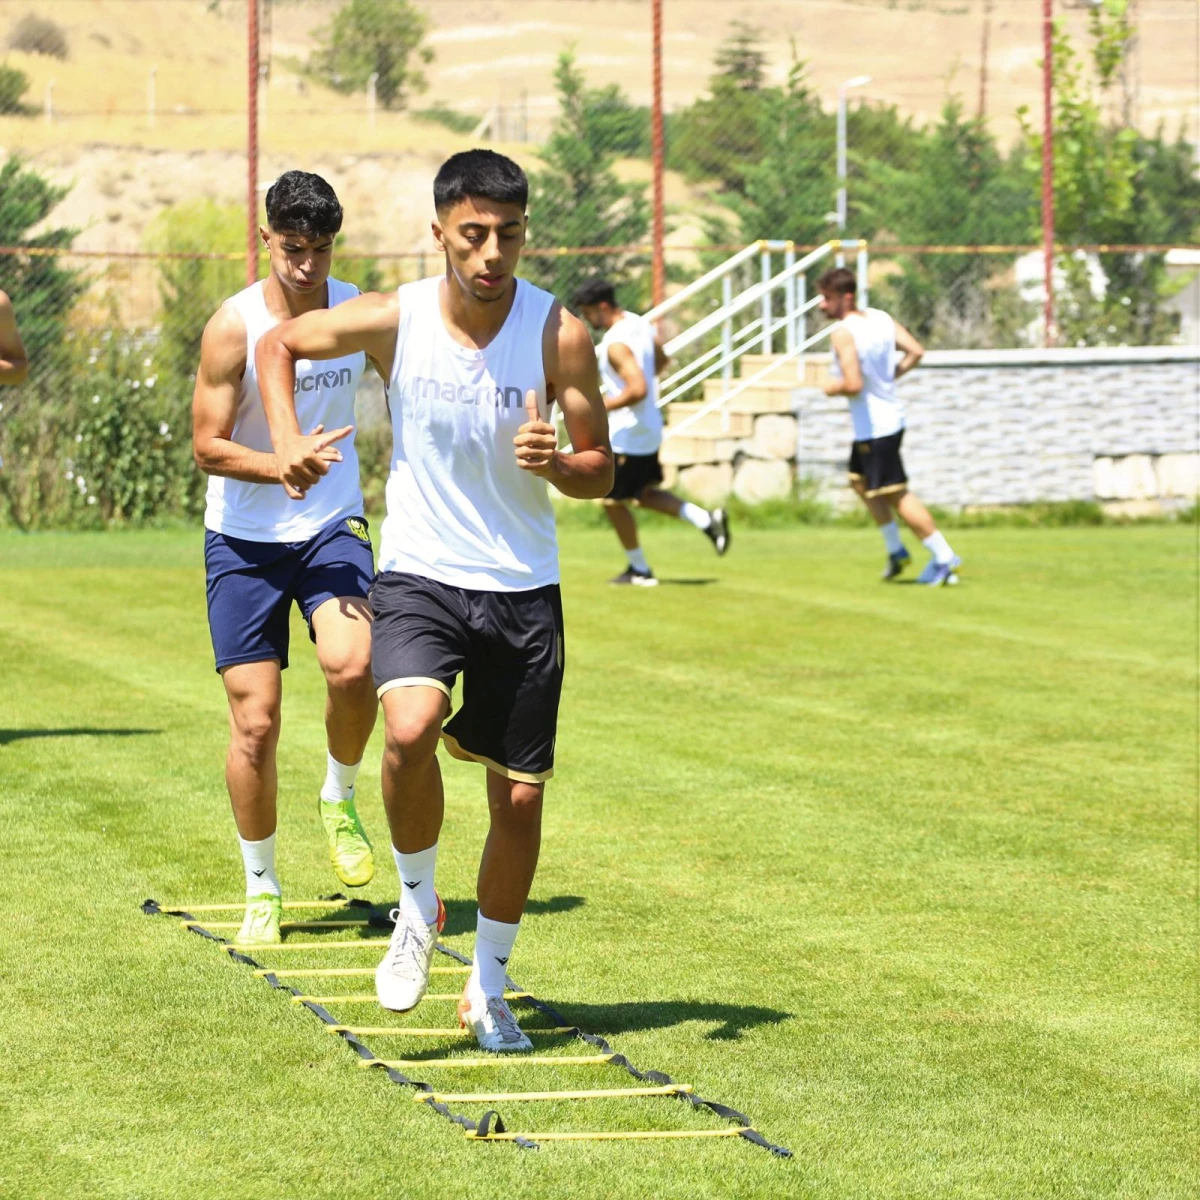 Yeni Malatyaspor sezon hazırlıklarını sürdürüyor